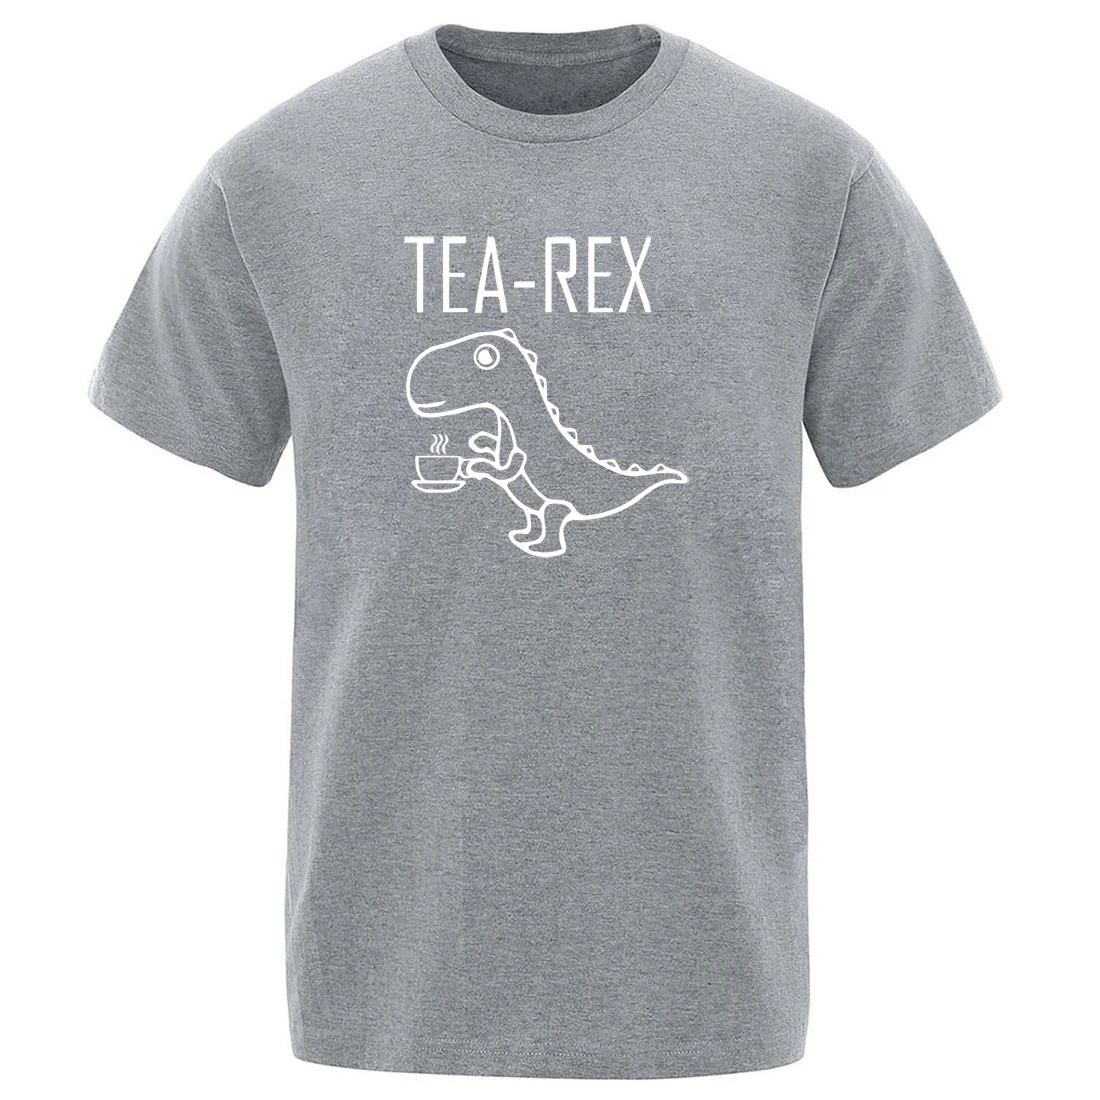 Sıcak satış çay Rex baskı erkekler t-shirt komik Harajuku ekip boyun düz renk t shirt 2020 hip hop % 100% pamuk homme kısa kollu